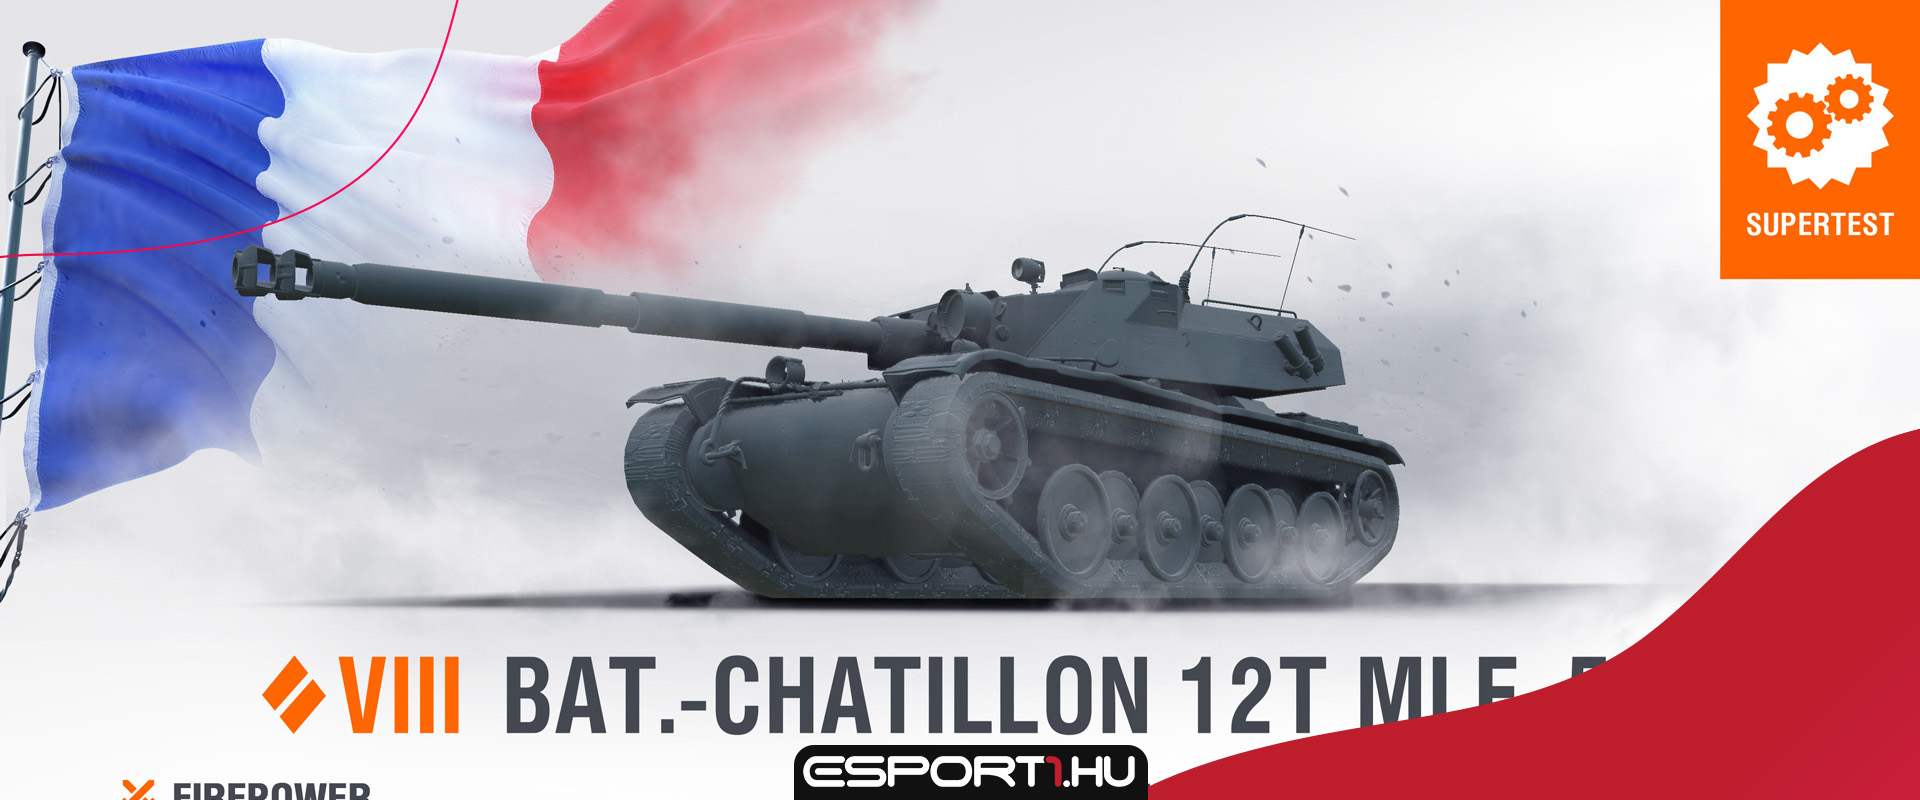 Bemutatkozik a Bat.-Châtillon 12t mle. 54 - Tier VIII-as francia közepes a szuperteszten!